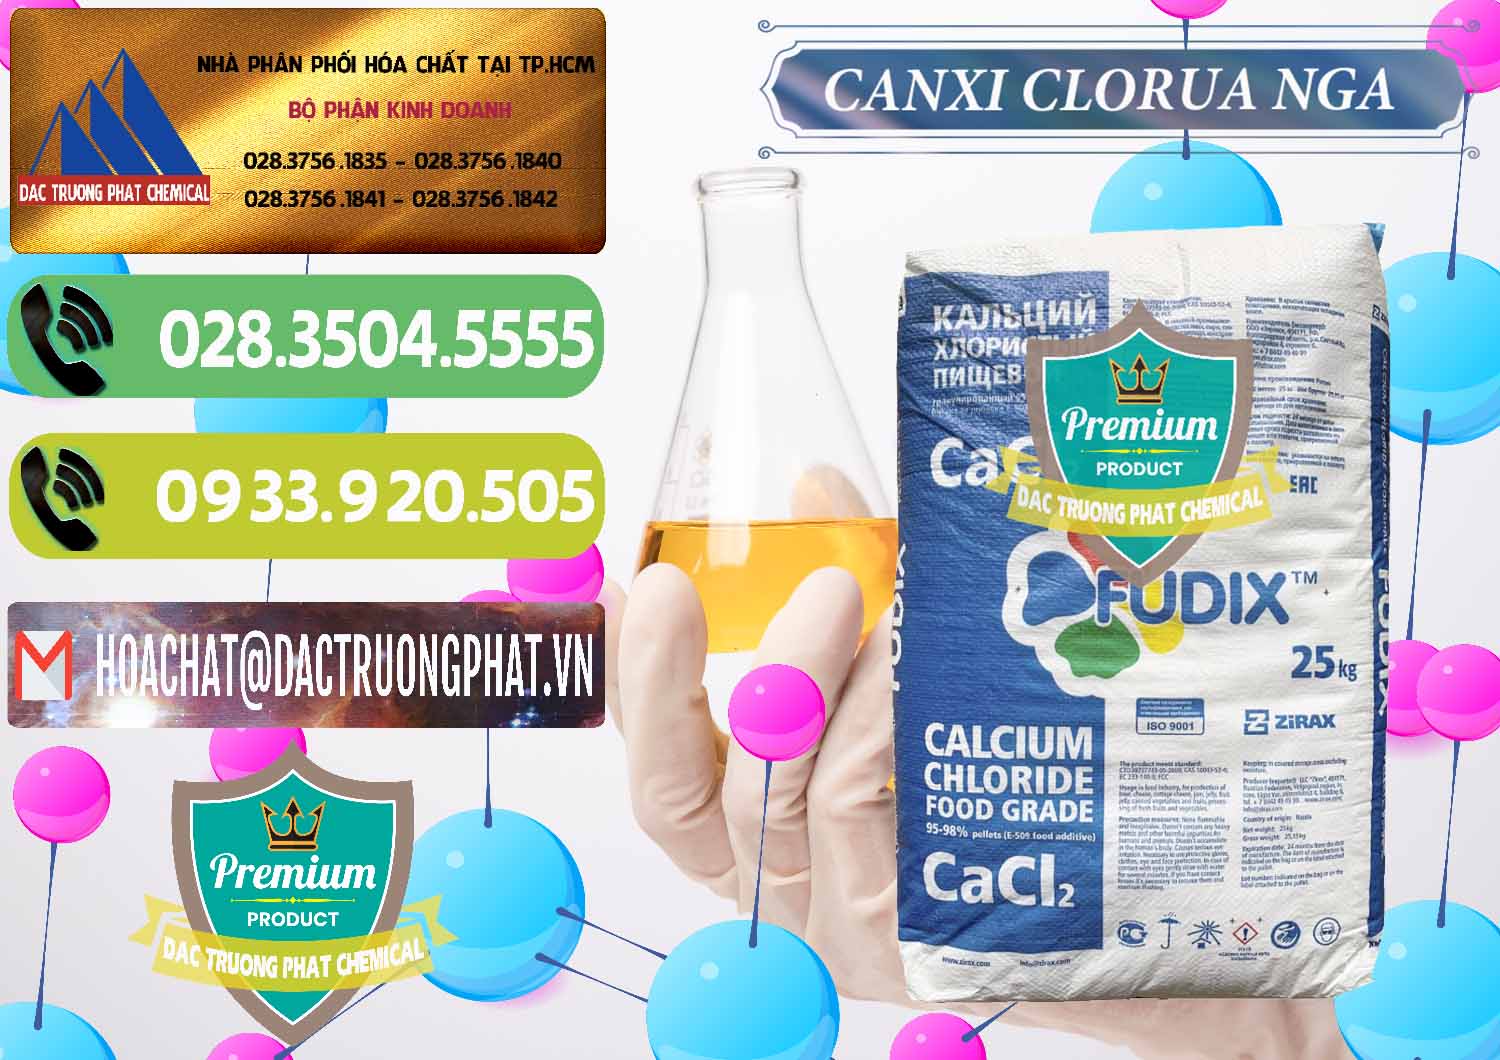 Đơn vị nhập khẩu _ bán CaCl2 – Canxi Clorua Nga Russia - 0430 - Công ty kinh doanh và cung cấp hóa chất tại TP.HCM - hoachatmientay.vn